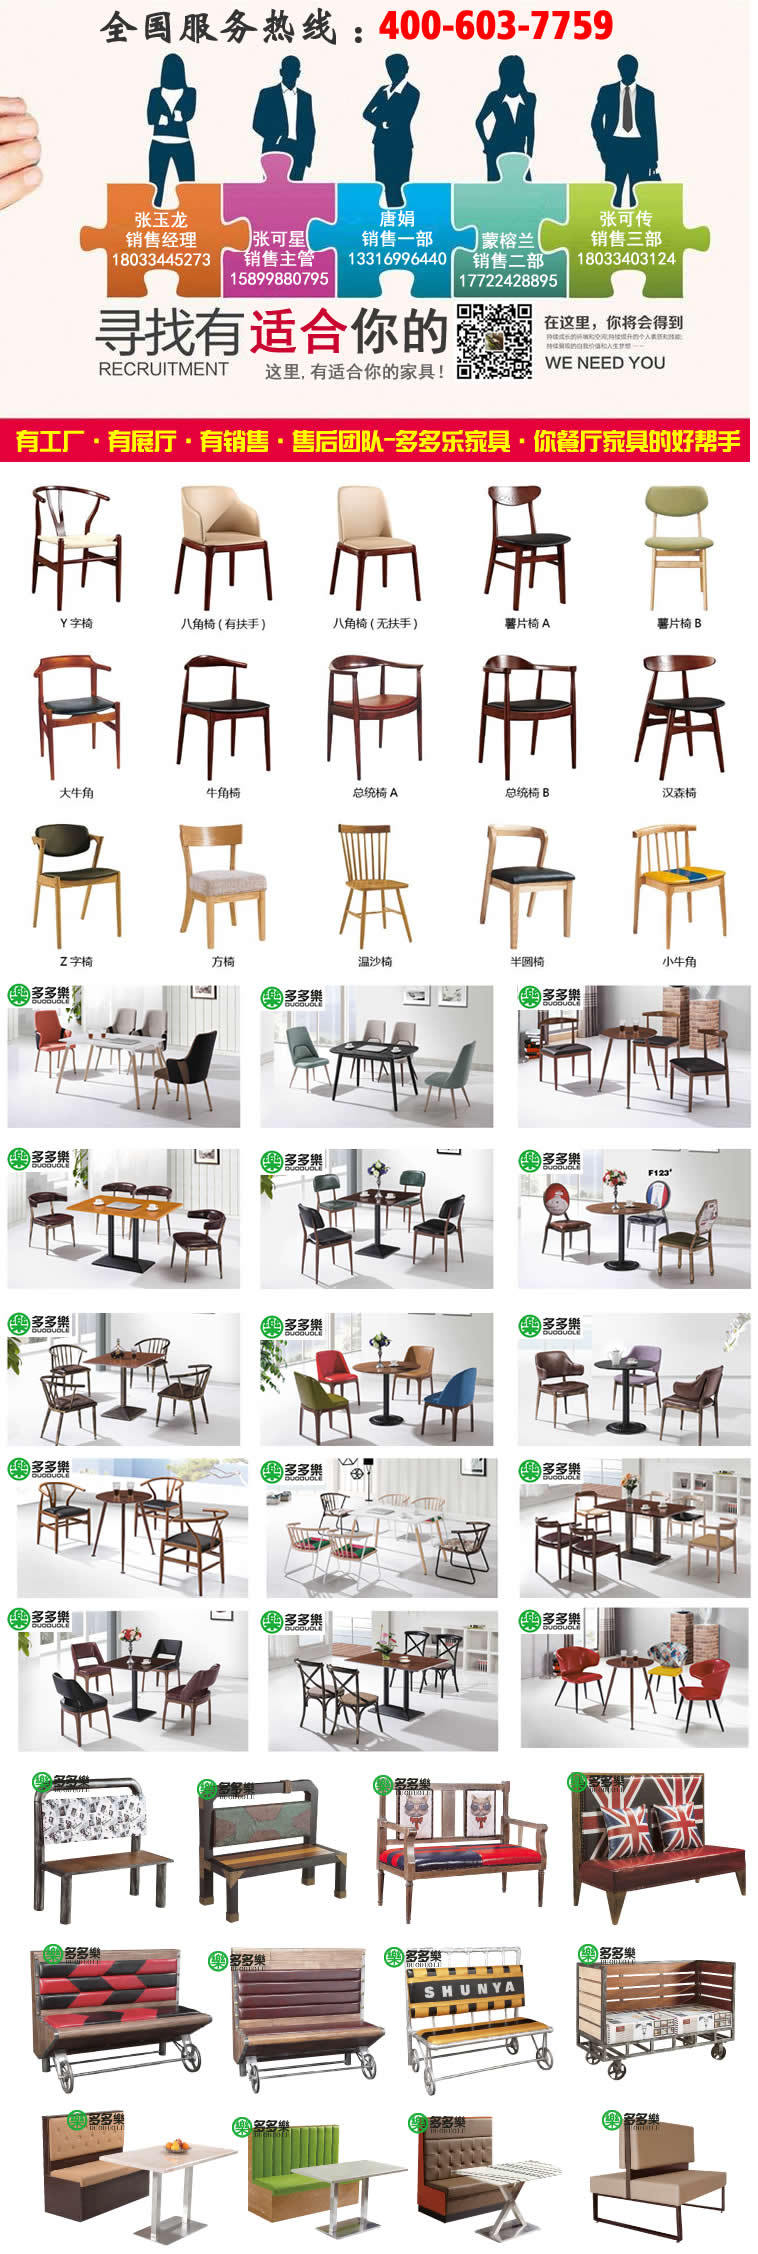 主题咖啡厅餐椅 多多乐餐饮沙发椅甜品店 loft茶餐厅 北欧实木椅示例图1